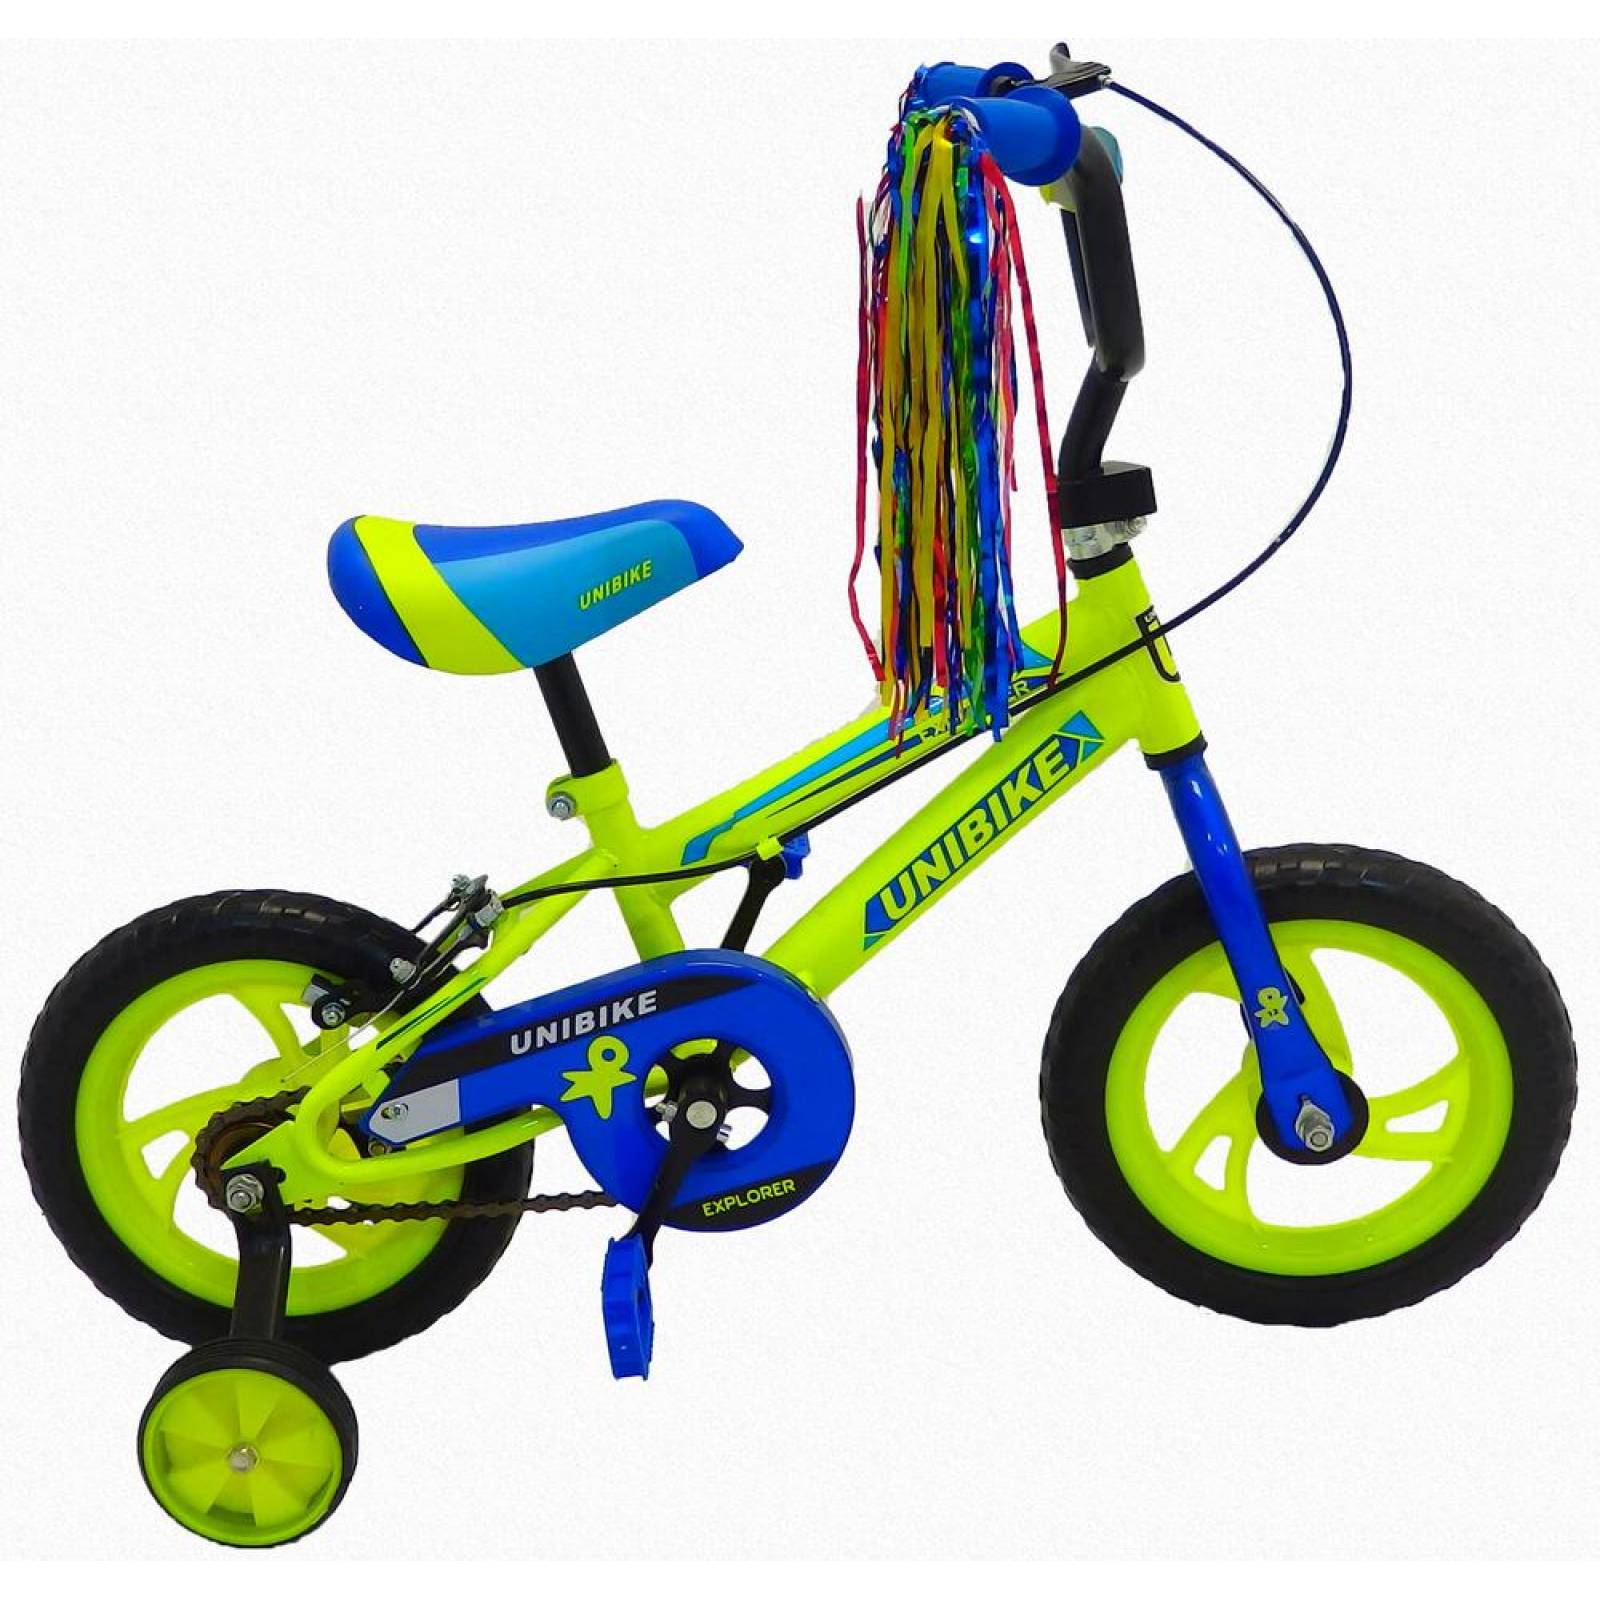 Bicicleta Infantil para niño rodada 12 con llantas de entrenamiento Azul